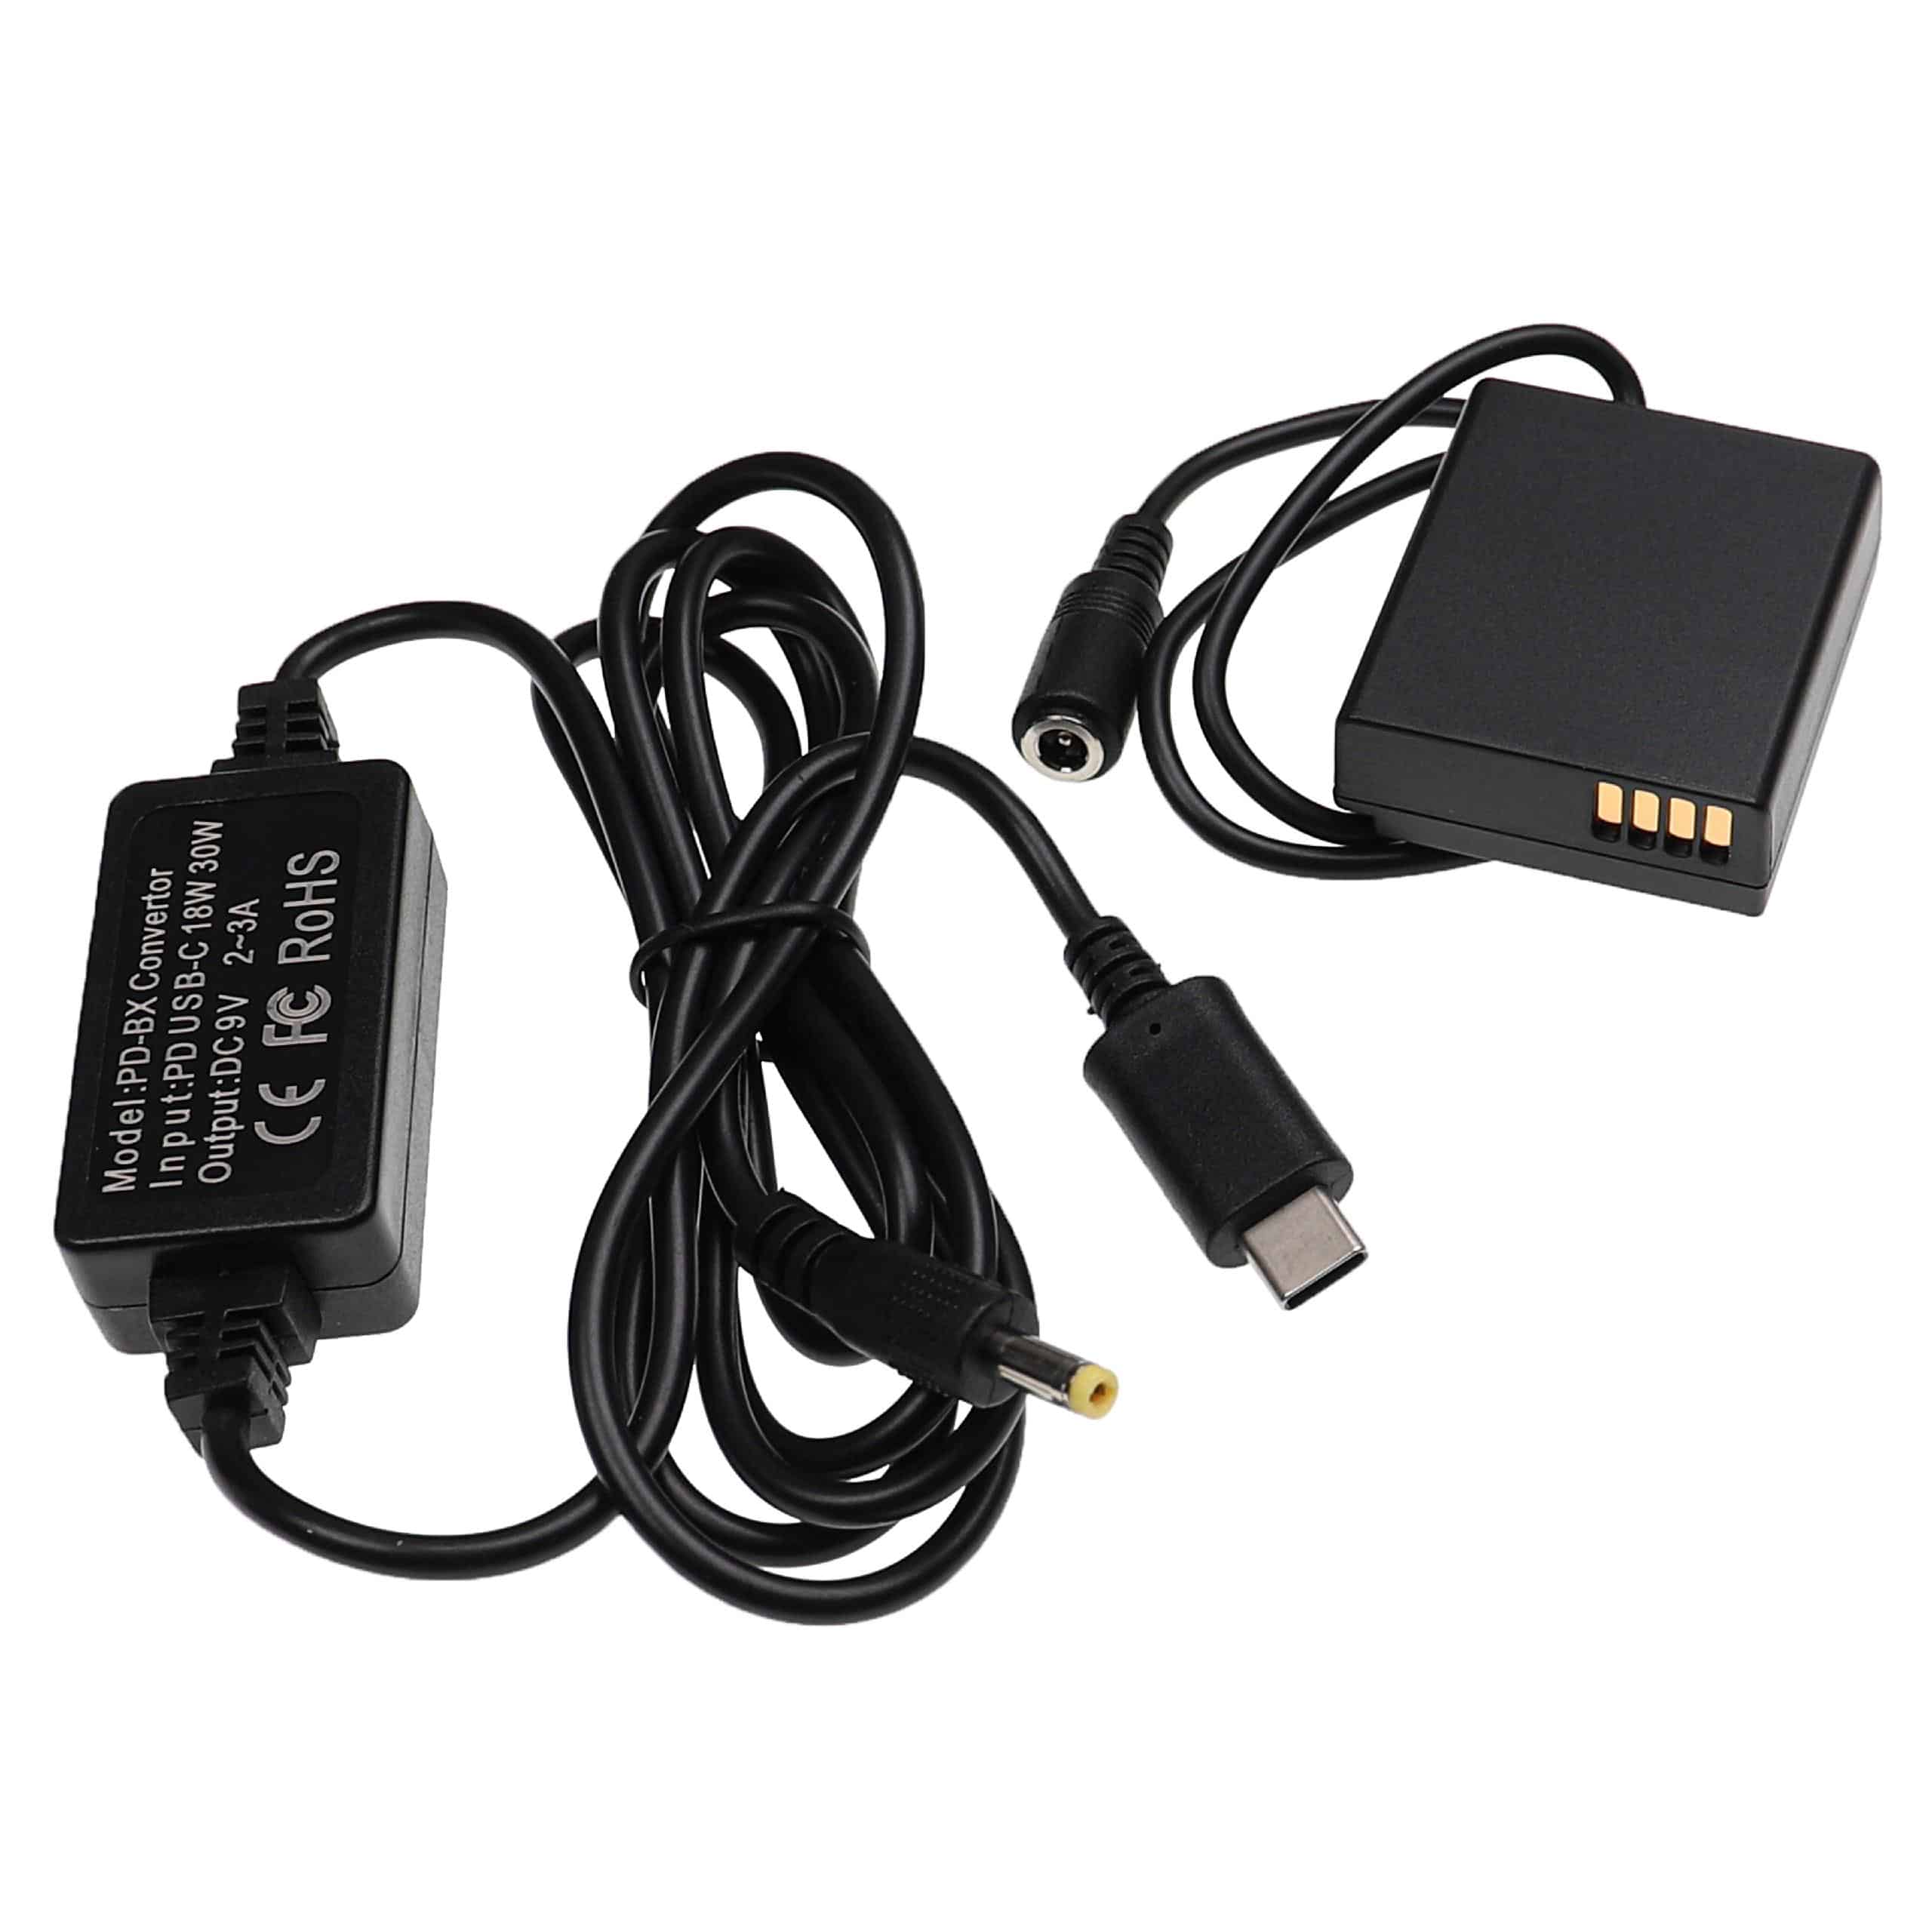 Zasilacz USB do aparatu zam. DMW-AC8EGDMW-AC8 + adapter zam. Panasonic DMW-DCC11 - 2 m, 9 V 3,0 A